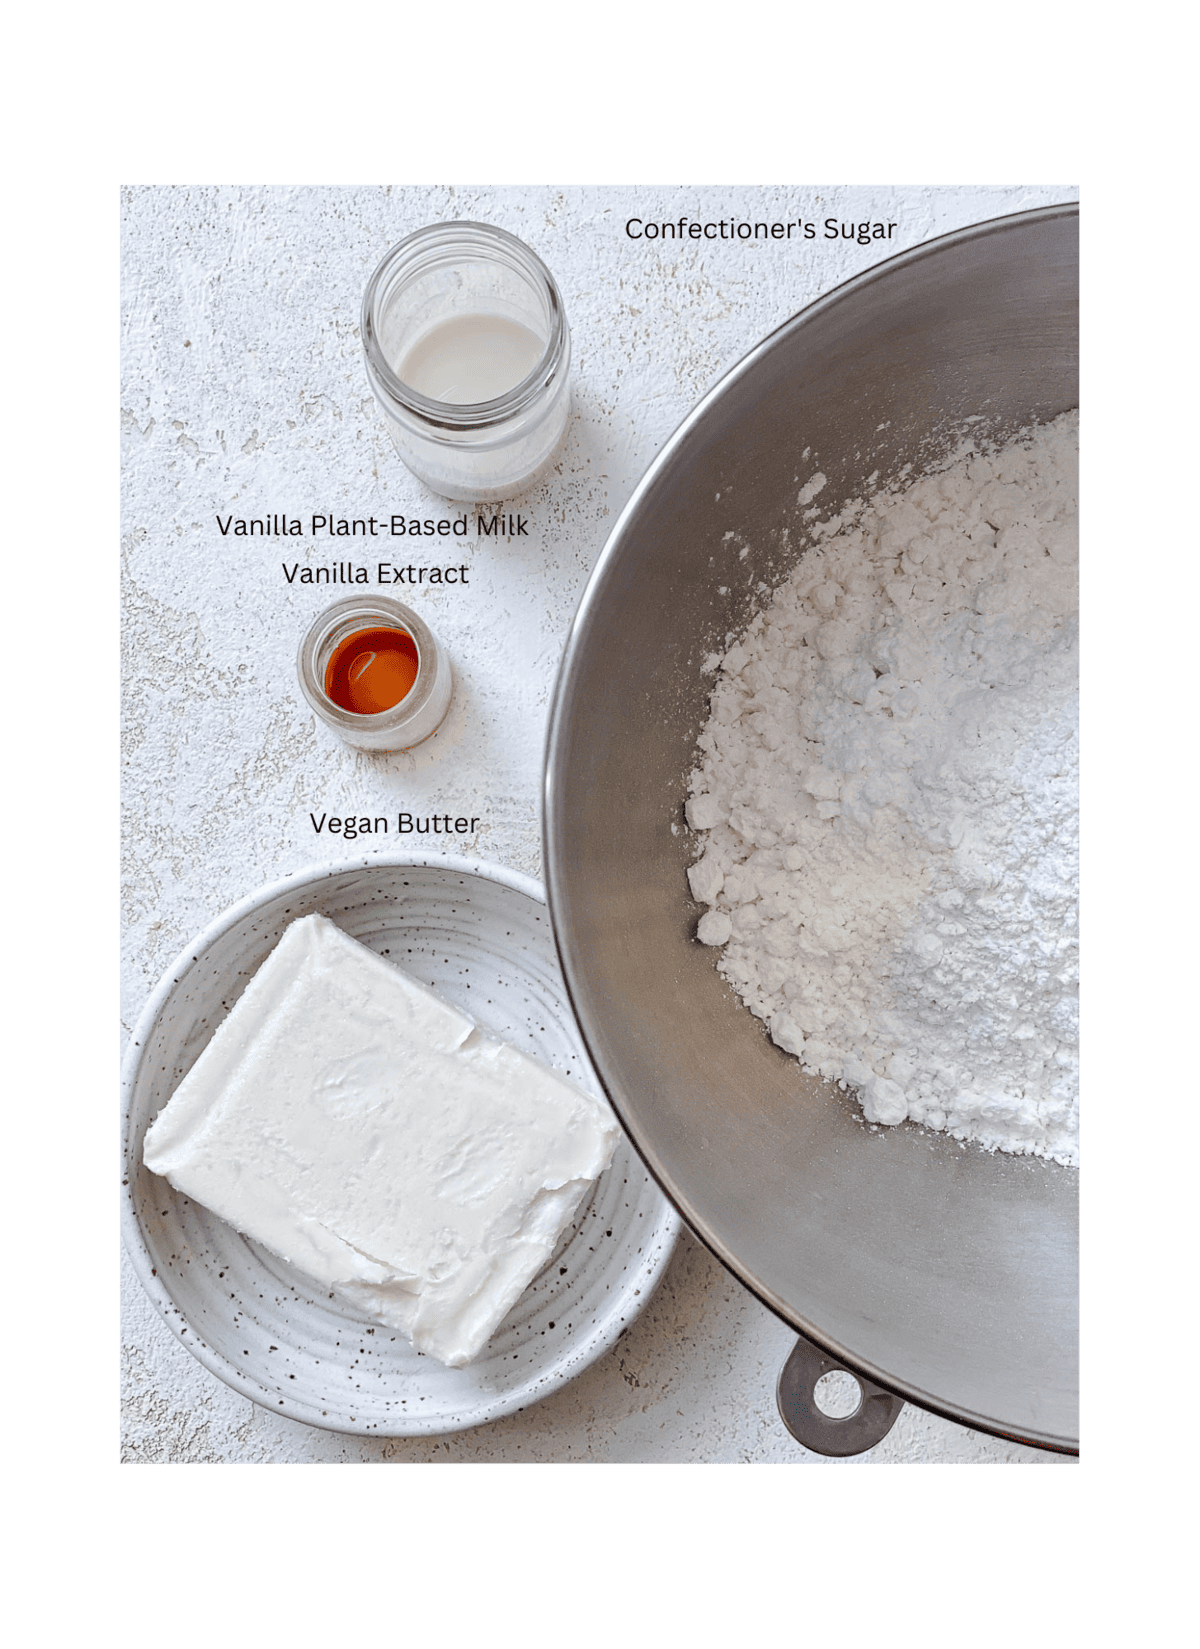 συστατικά για Vanilla Vegan Buttercream Frosting μετρημένα σε λευκή επιφάνεια